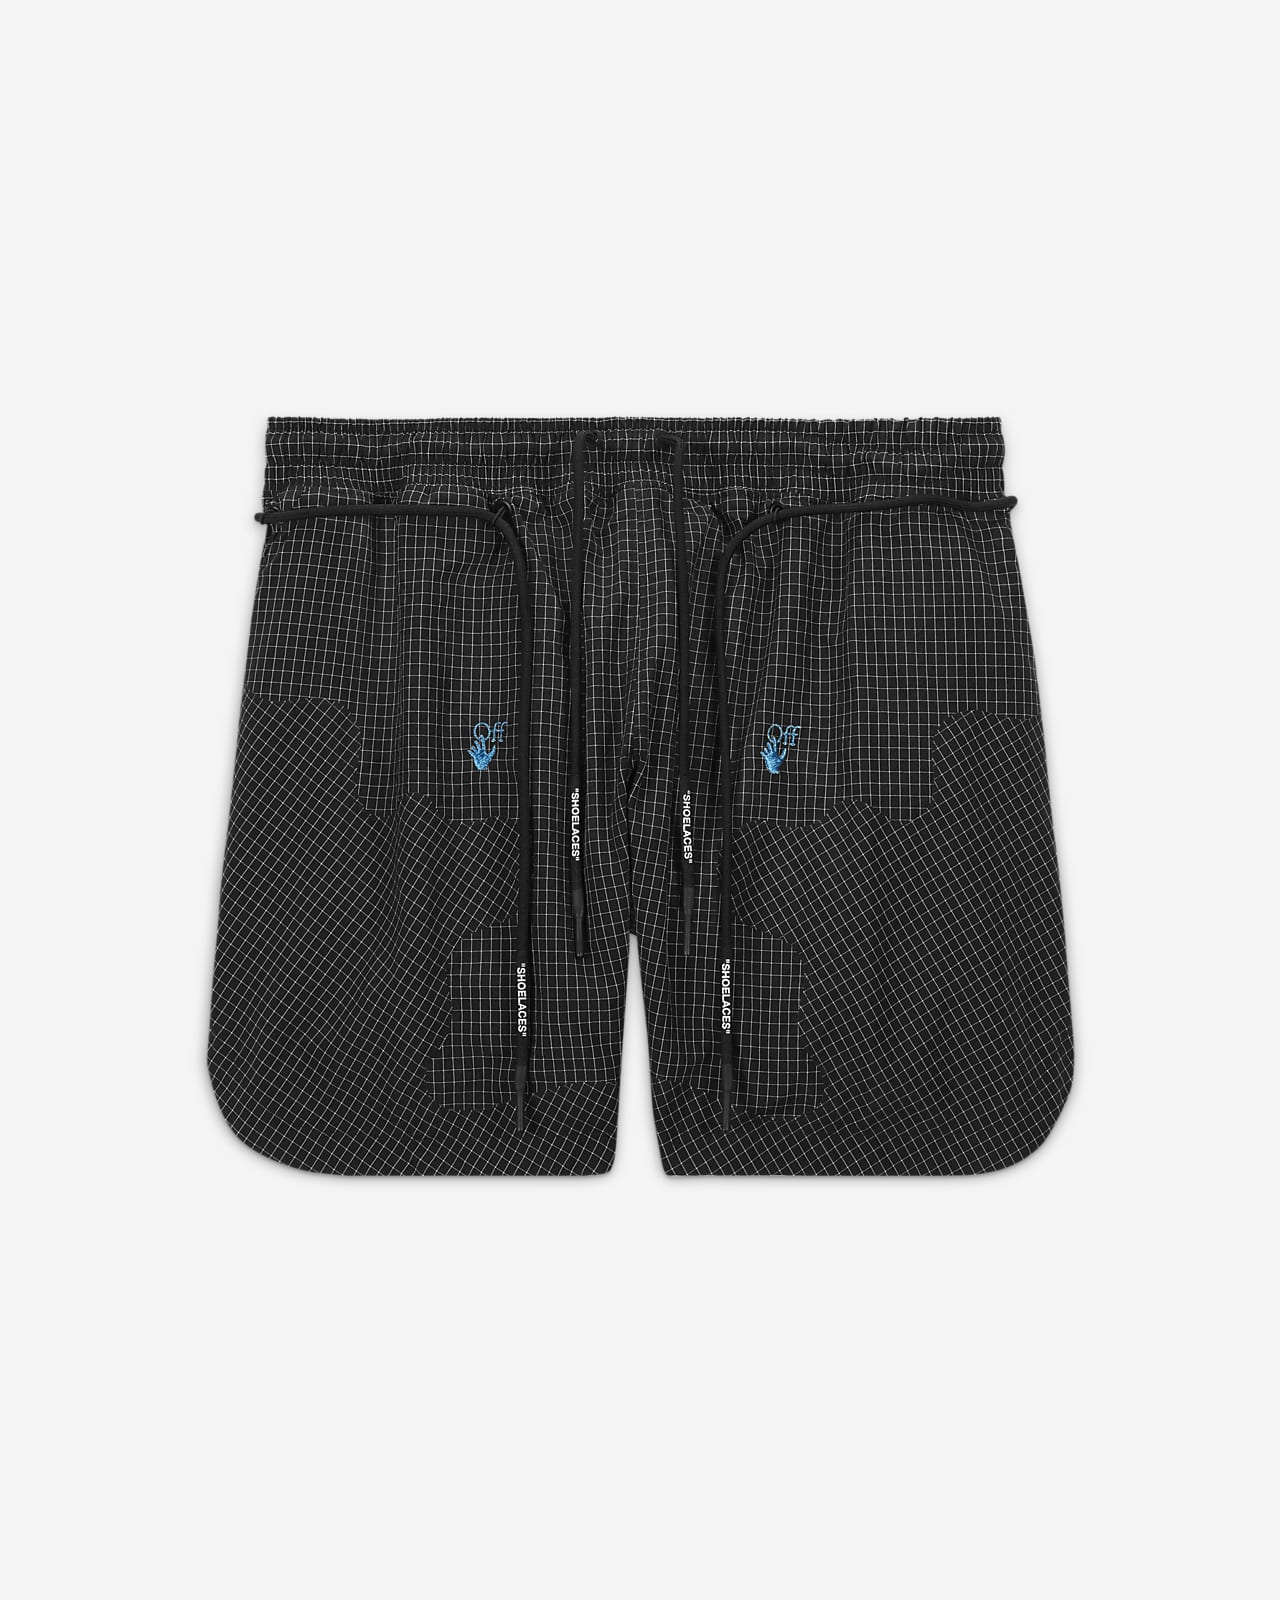 Nike × off White woven shorts 002 - ショートパンツ